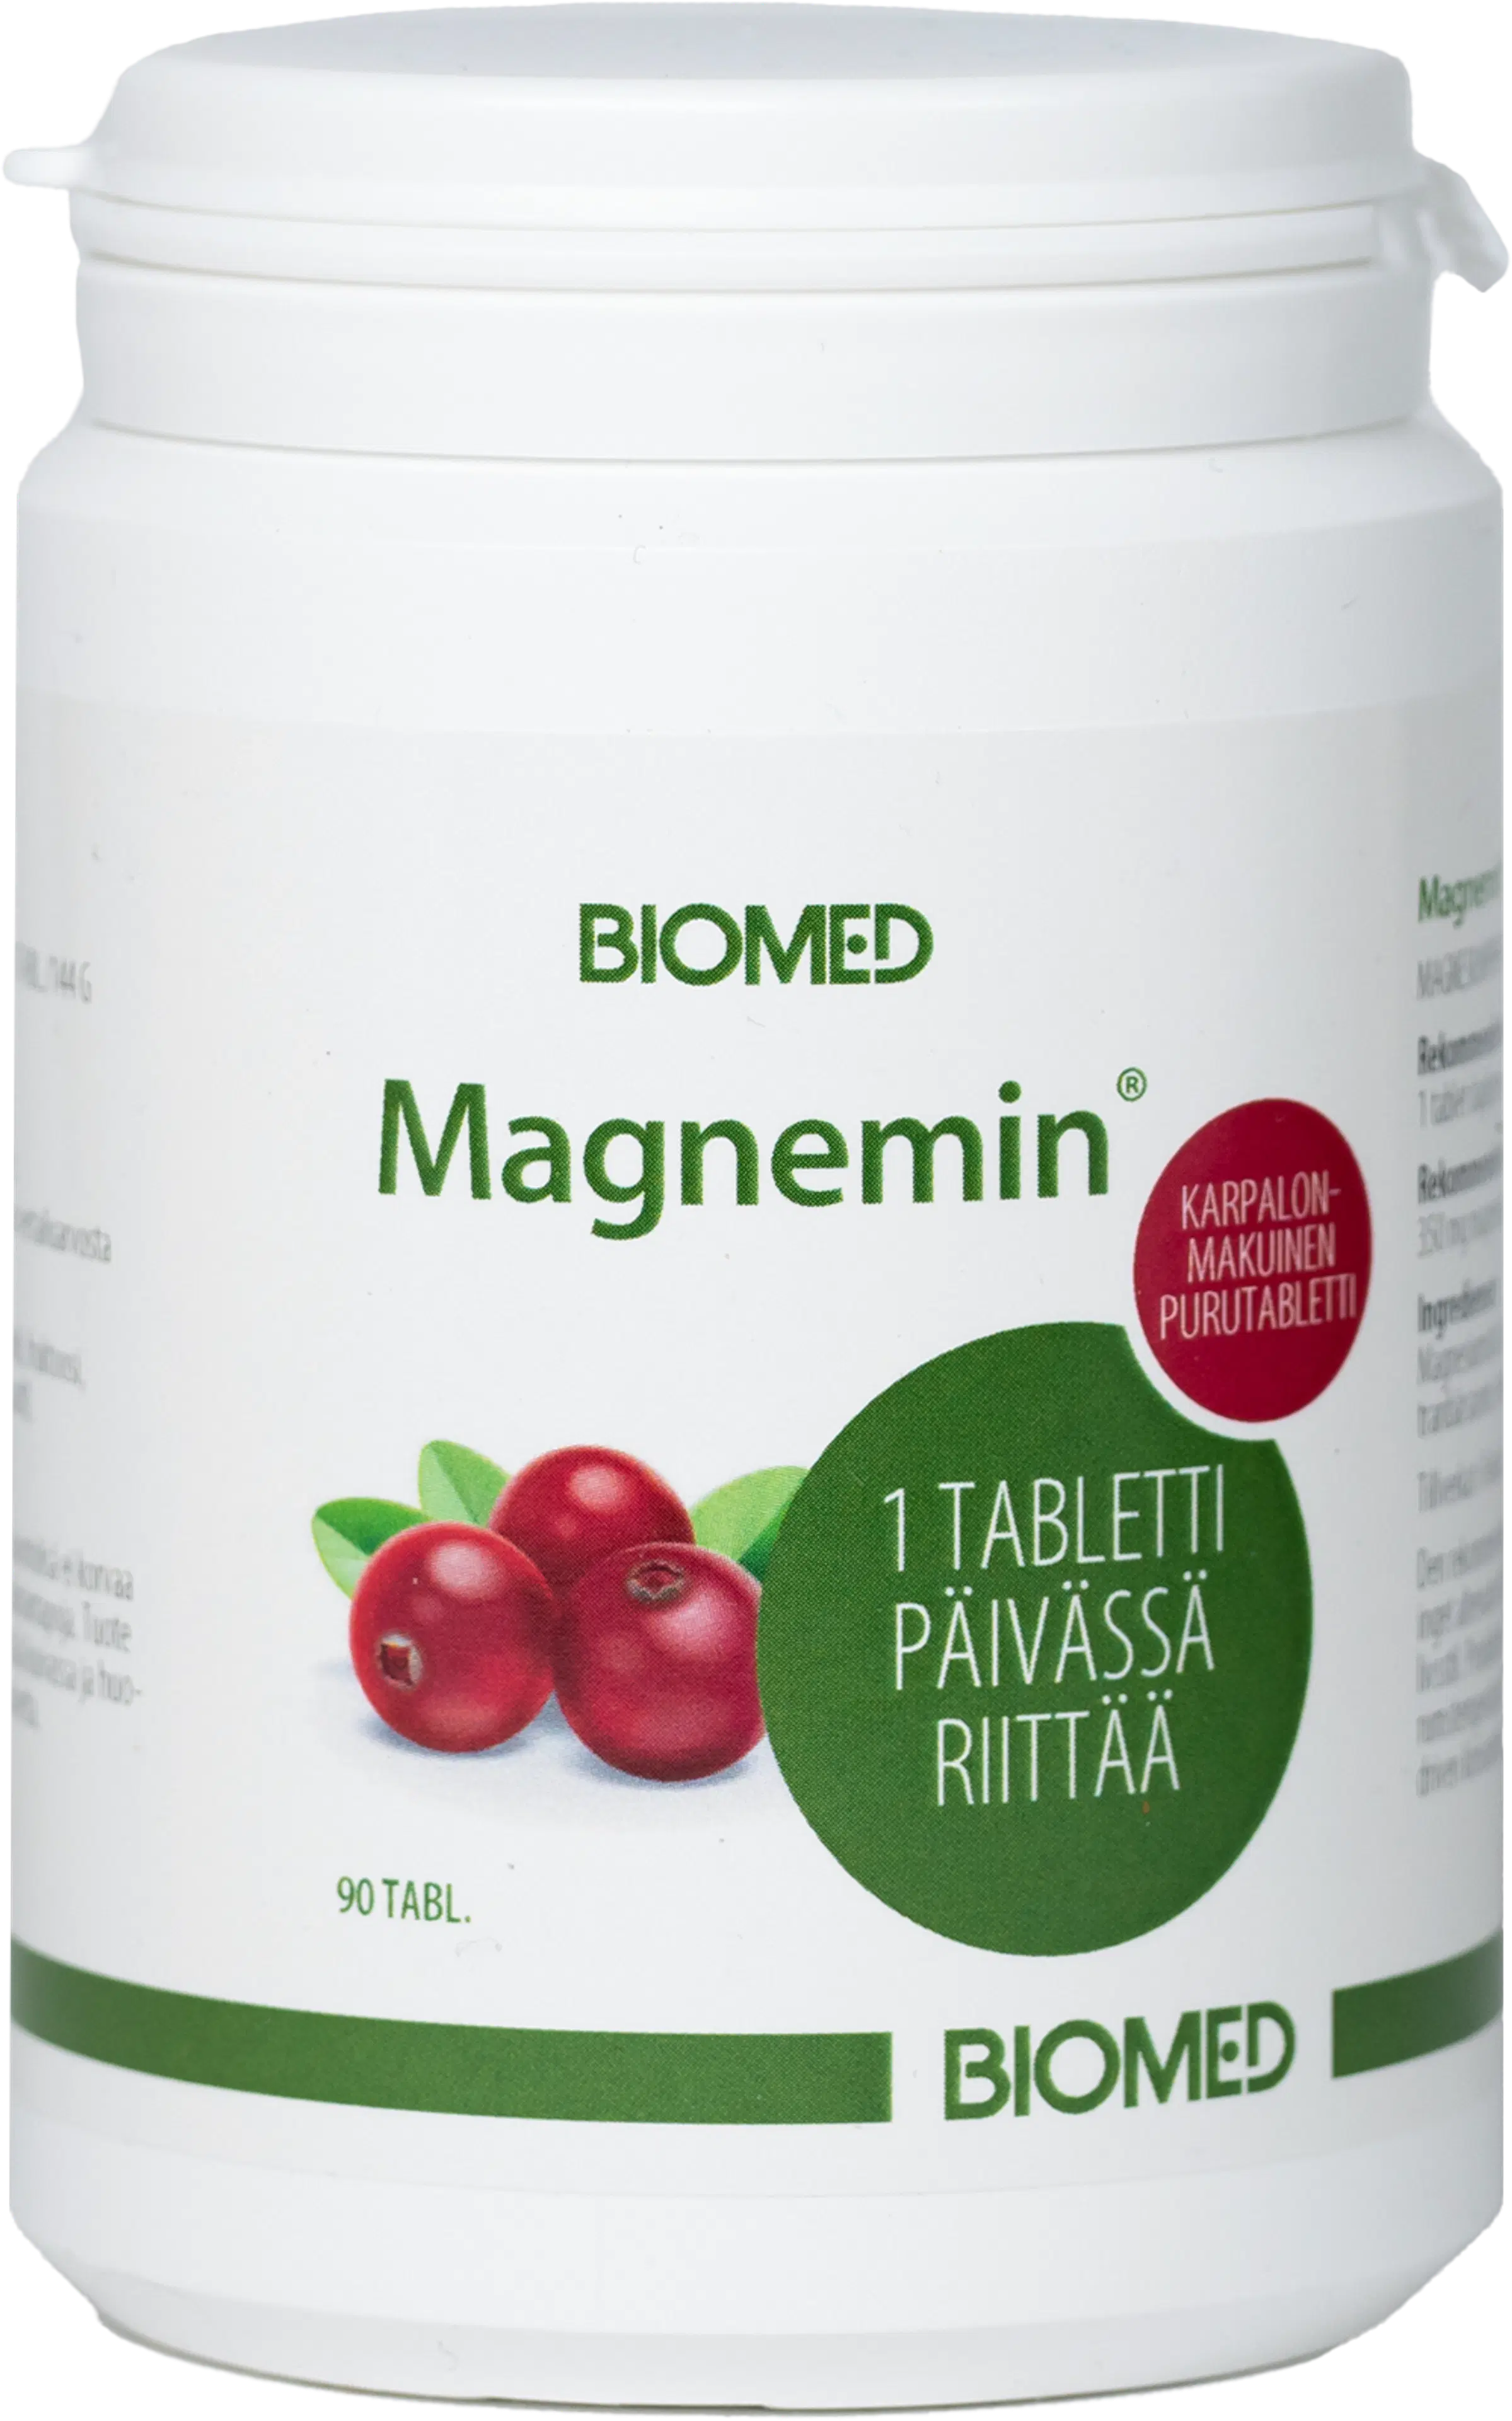 Biomed Magnemin karpalo magnesium purutabletti 90 tabl.